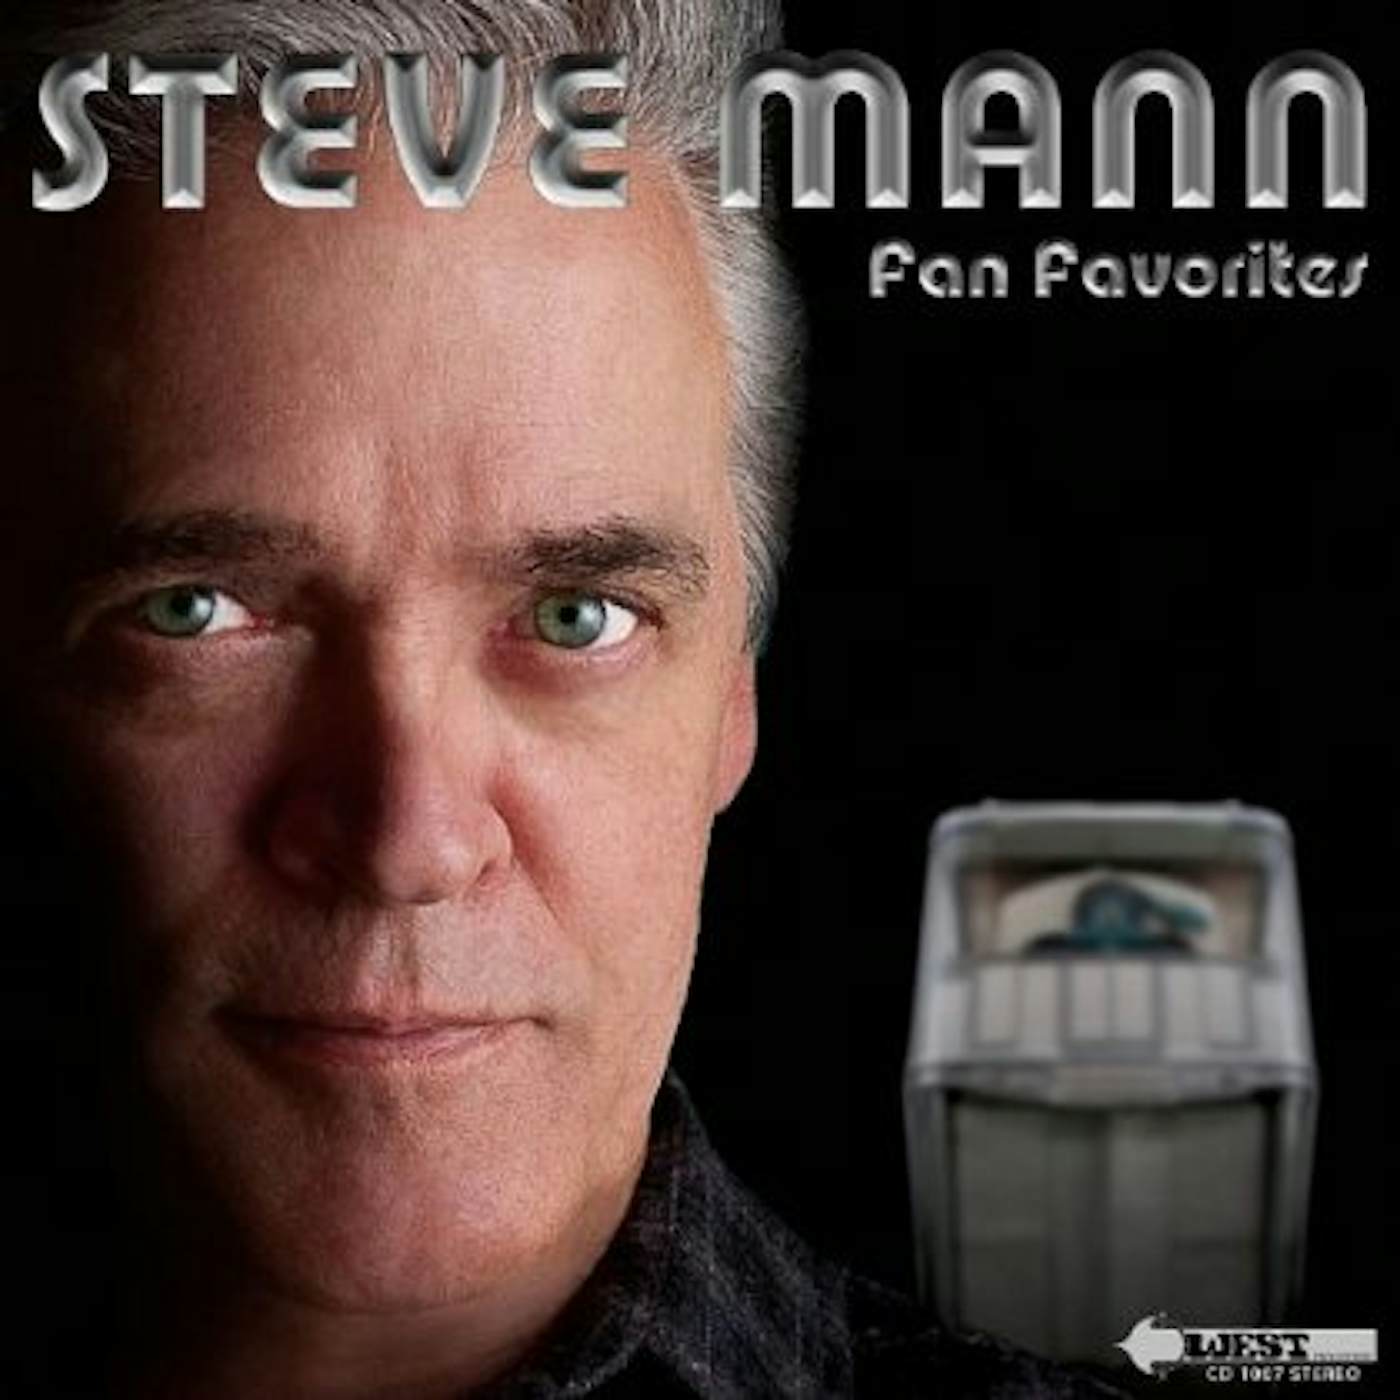 Steve Mann FAN FAVORITES CD